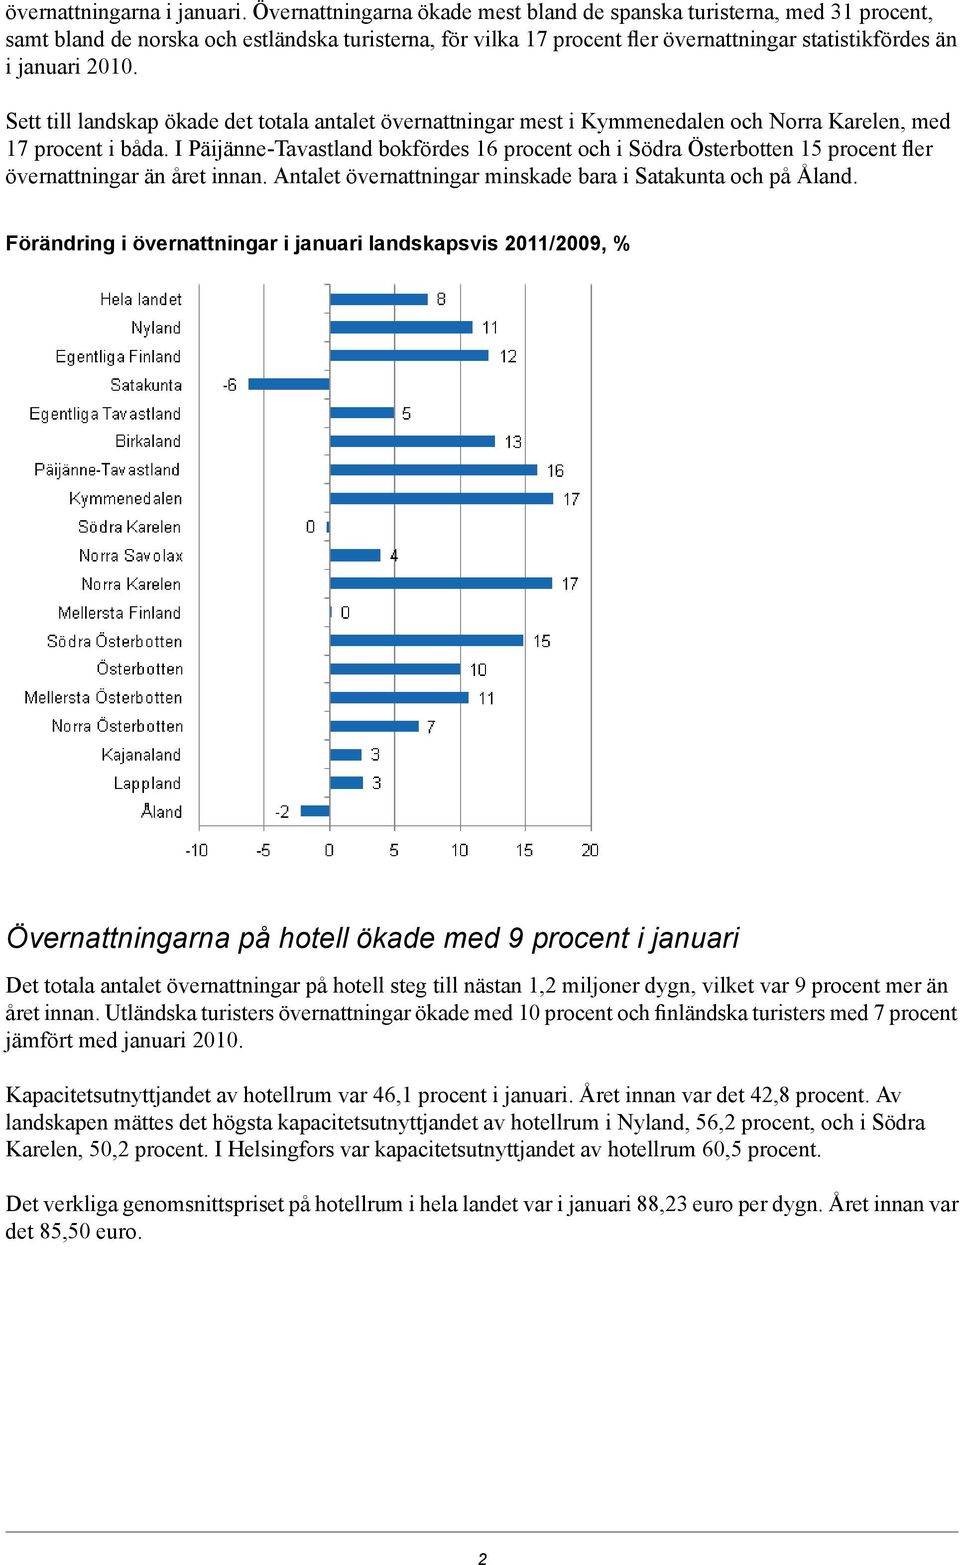 Södra Österbotten 15 procent fler övernattningar än året innan Antalet övernattningar minskade bara i Satakunta och på Åland Förändring i övernattningar i januari landskapsvis 2011/200, %